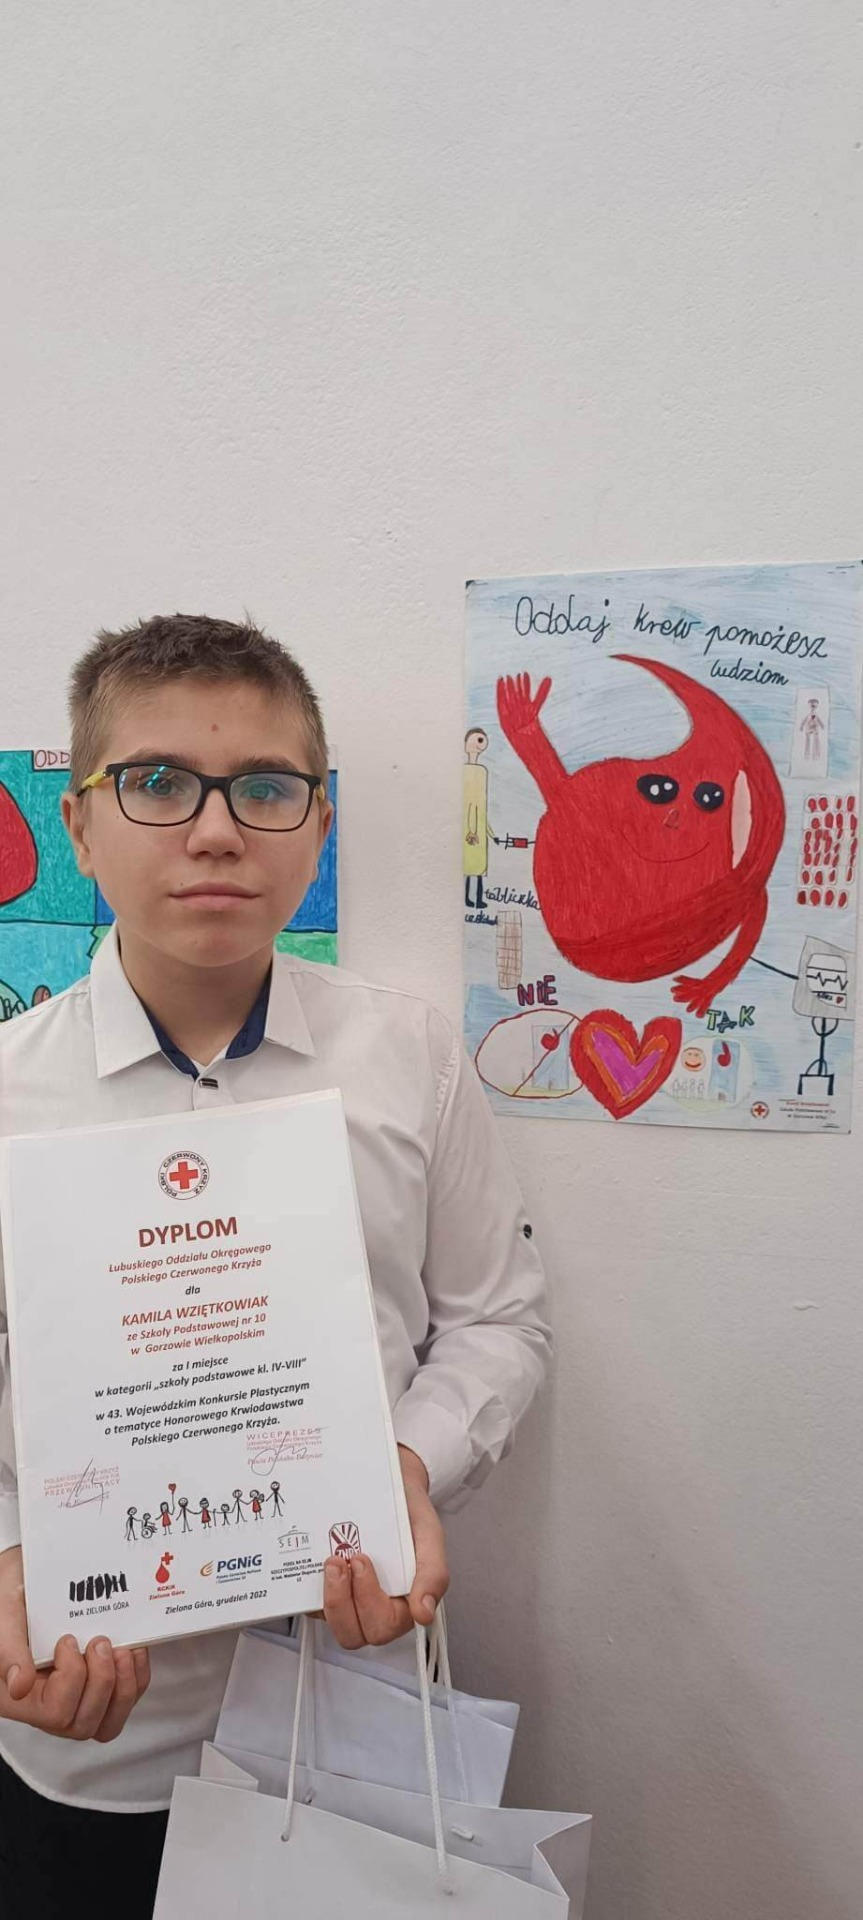 43 Wojewódzki Konkurs Plastyczny Polskiego Czerwonego Krzyża  - Obrazek 1